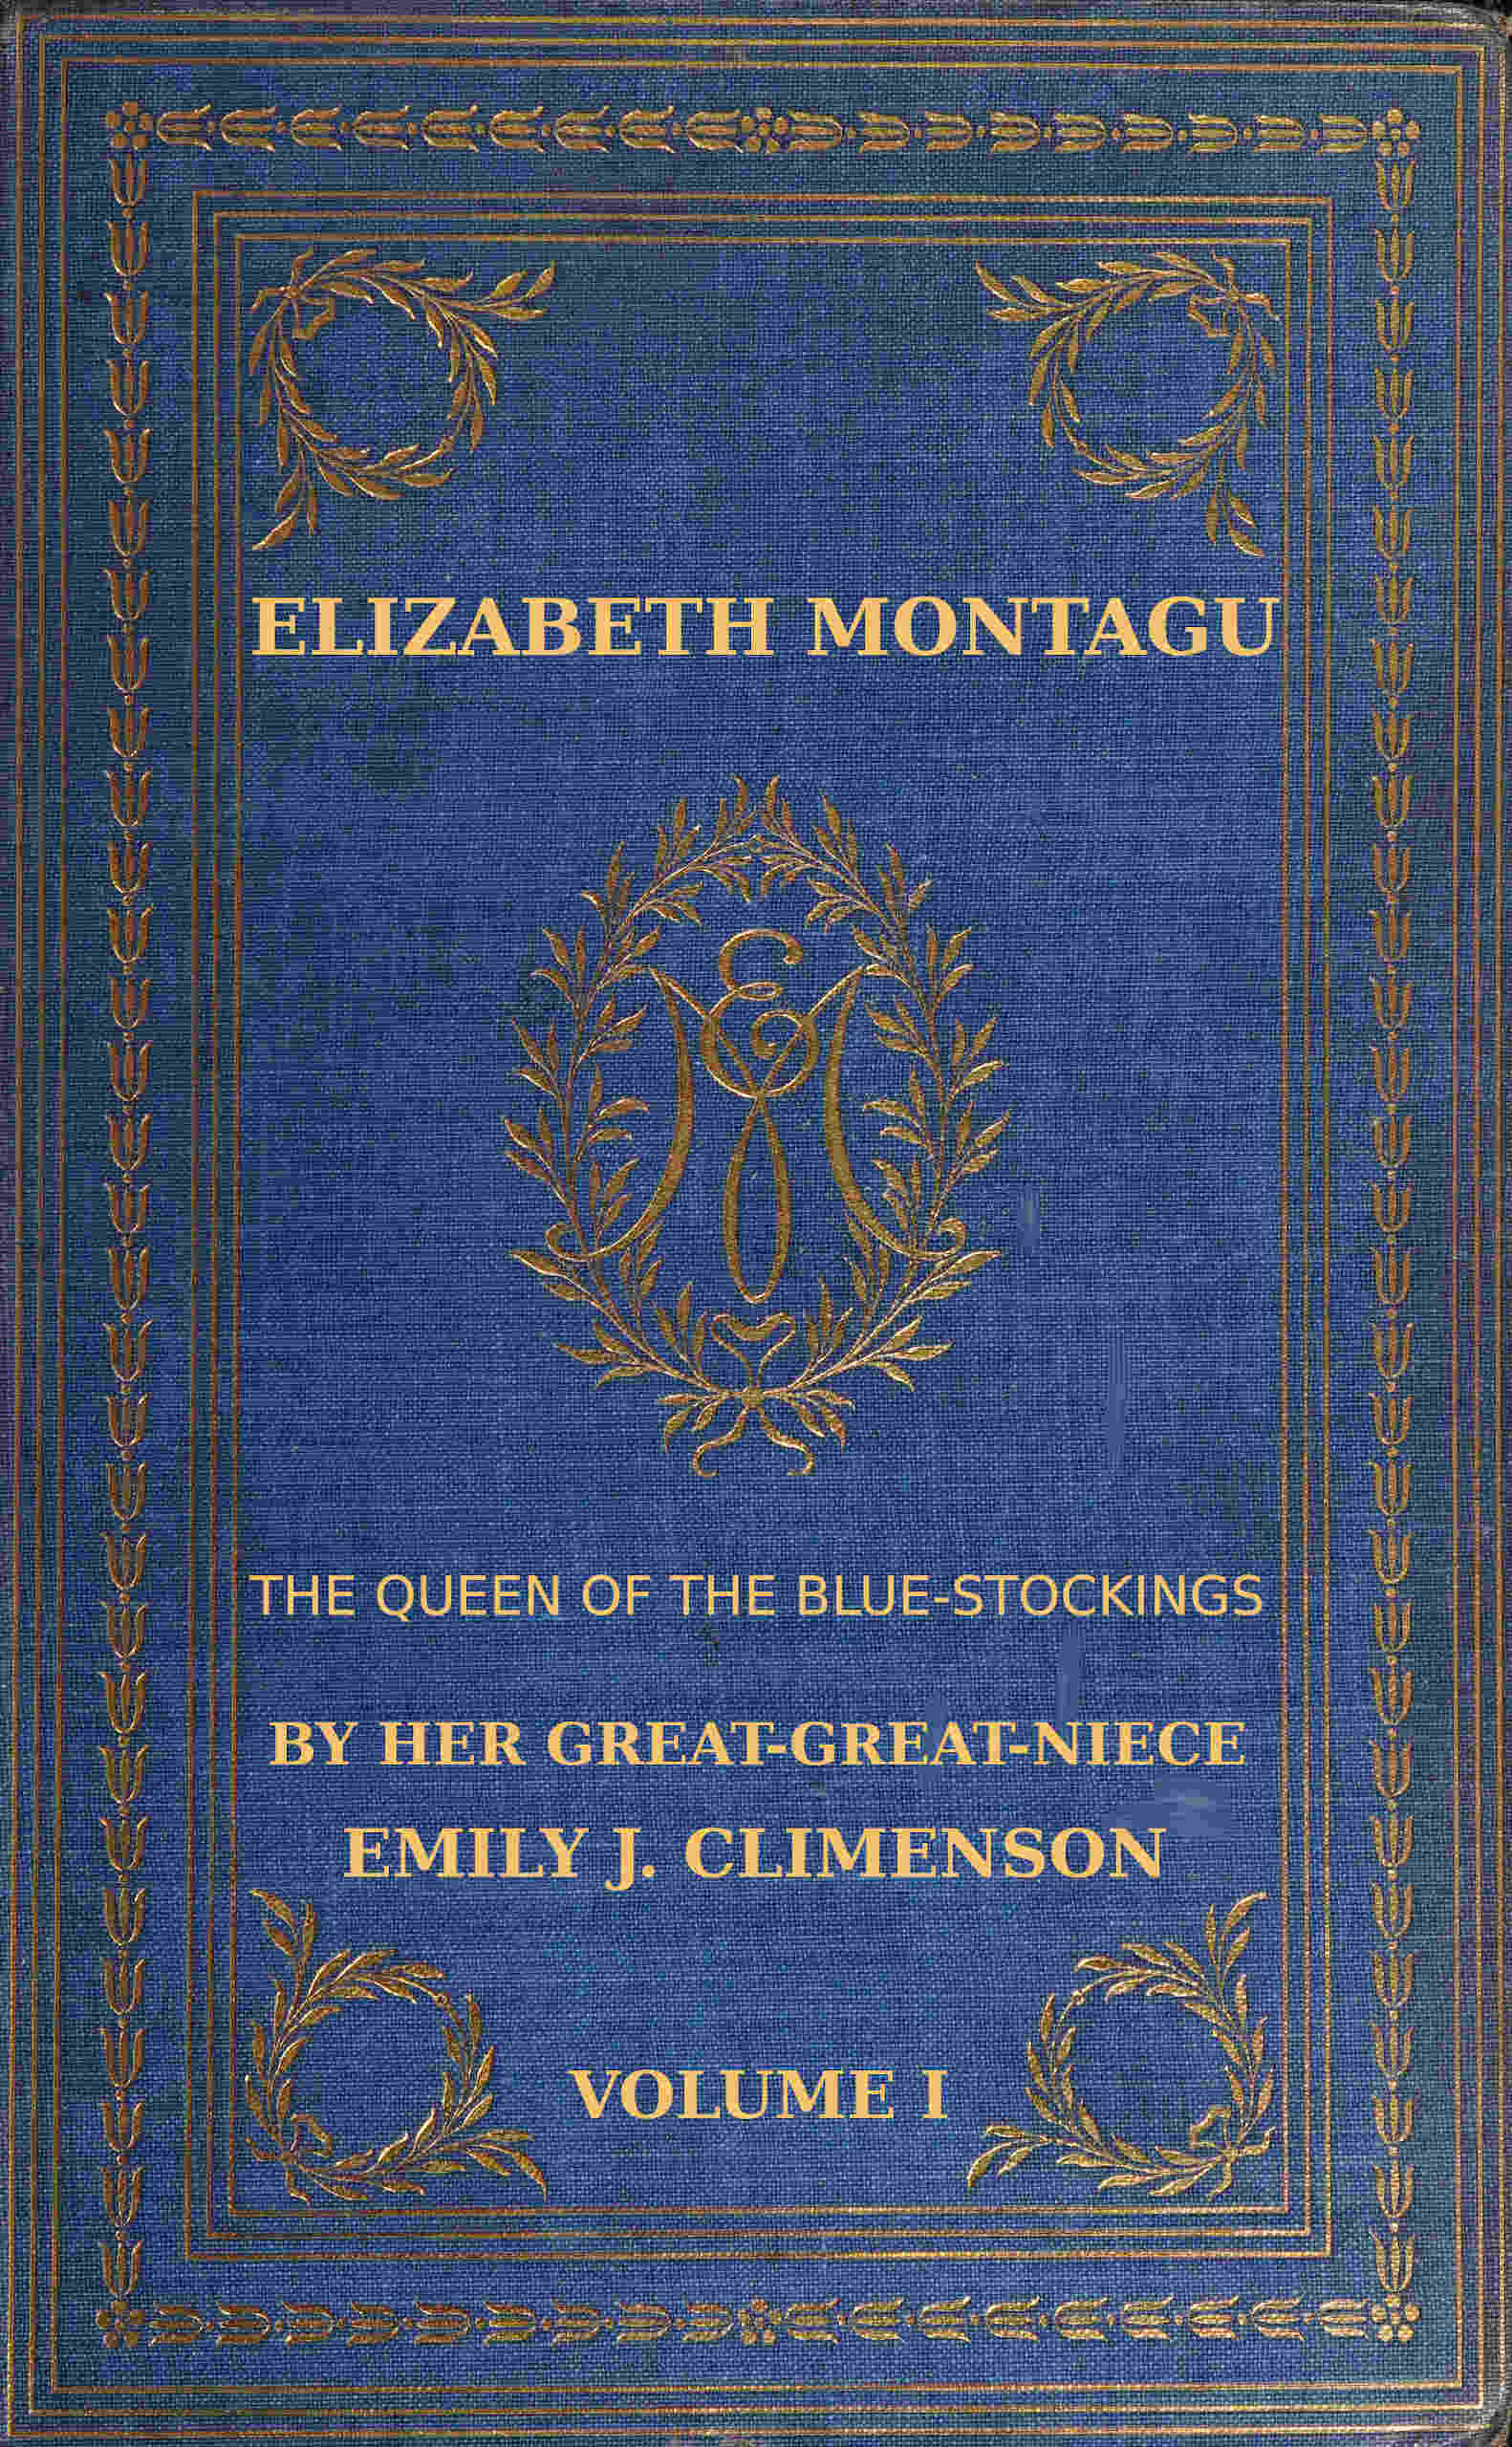 Elizabeth Montagu, bluestockinglerin kraliçesi, Cilt 1 (2 cildin 1)'